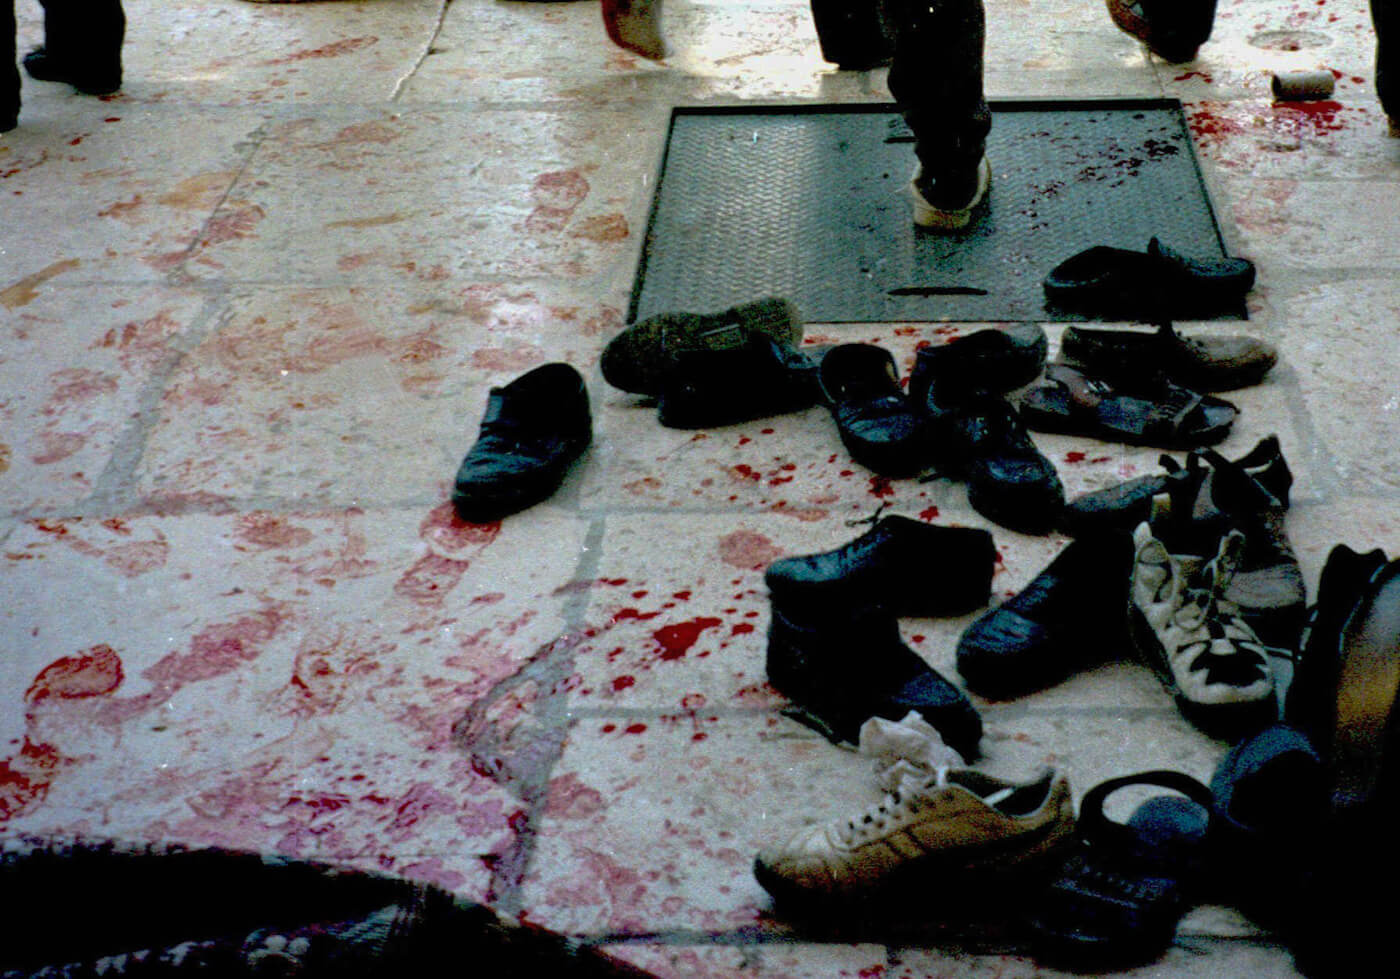 Al-Aqsa 1996 massacre